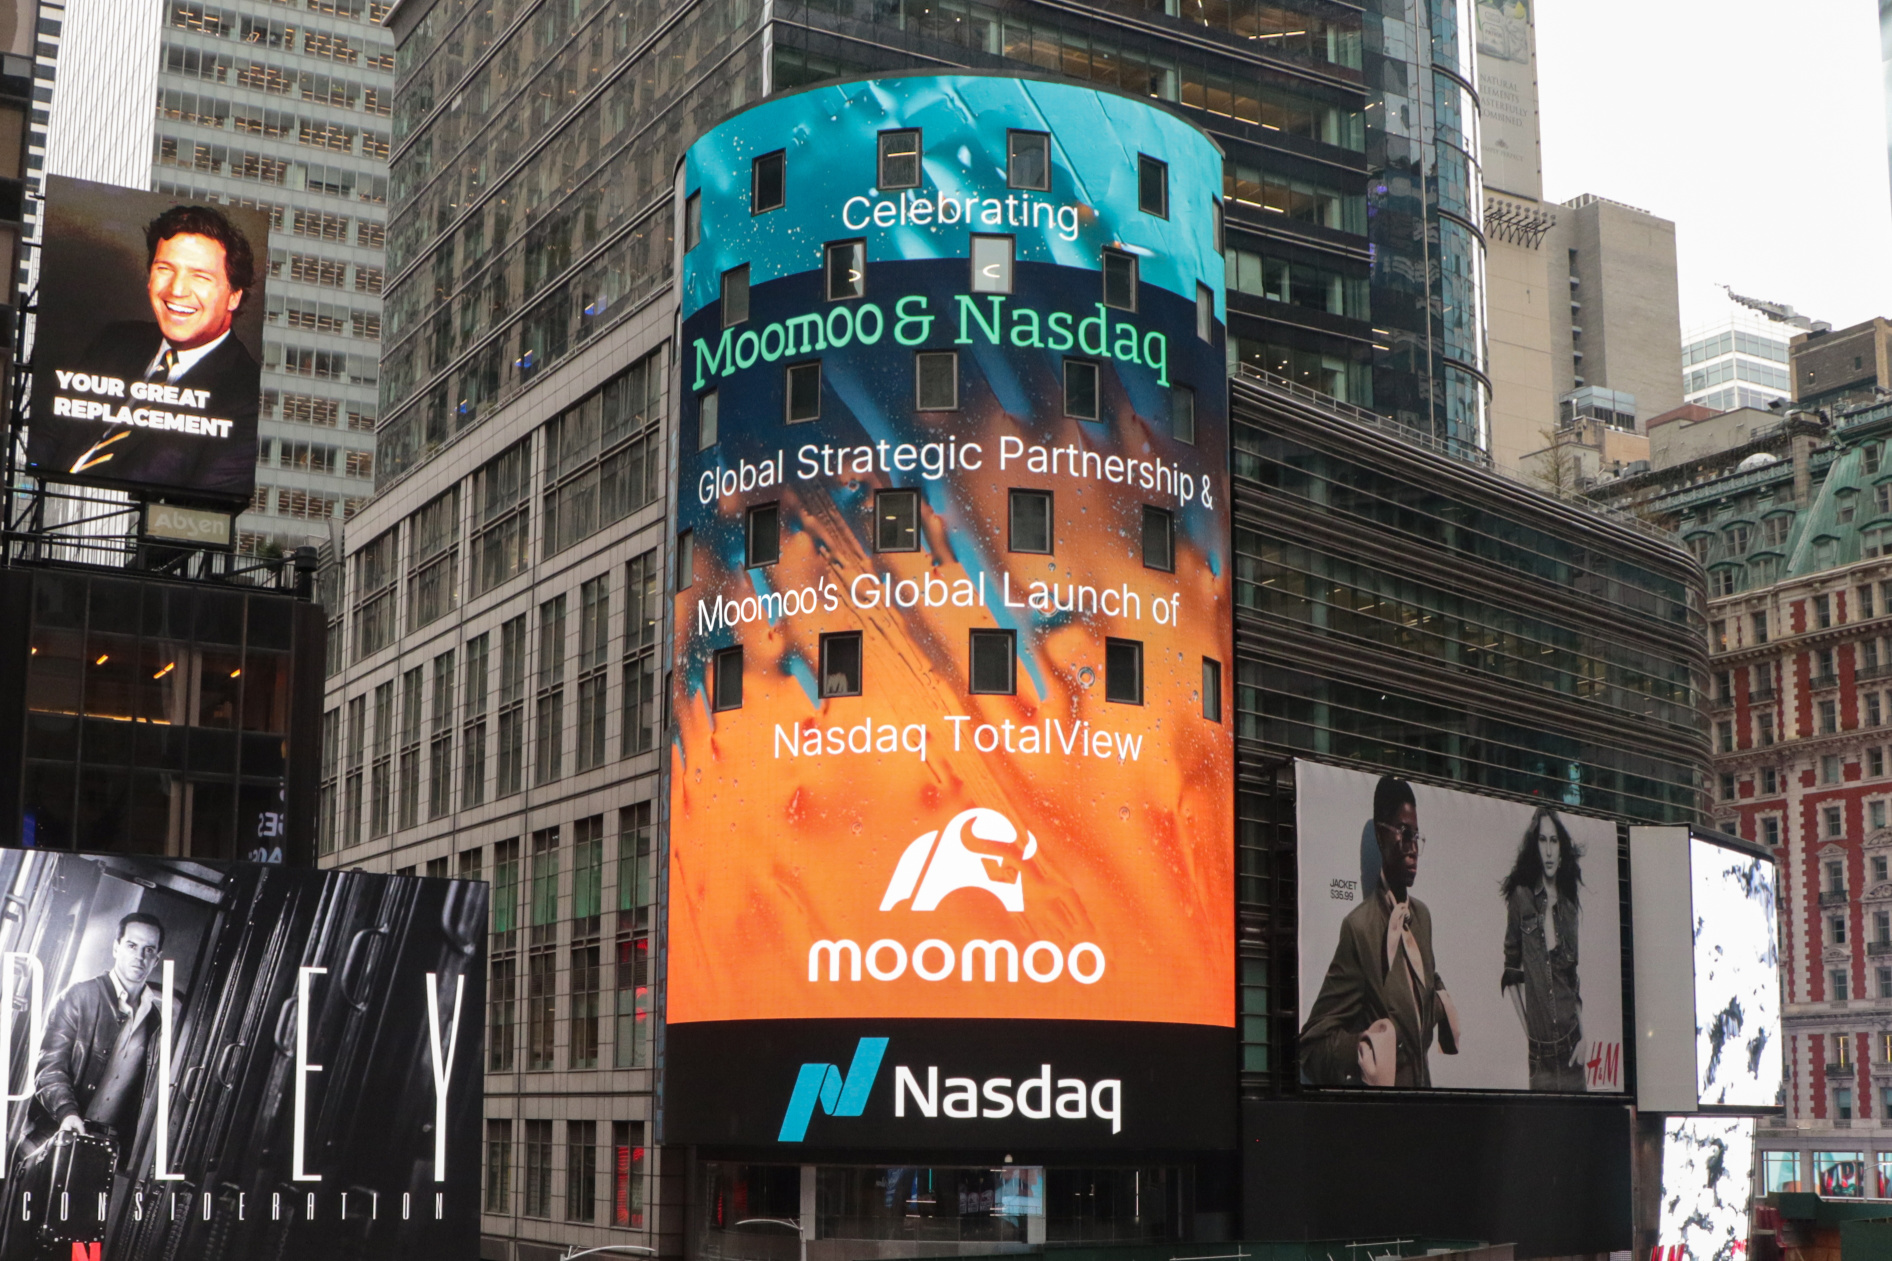 moomooとナスダックは6年のパートナーシップを祝い、投資家教育を続けるためのグローバルストラテジックパートナーシップを発表しました。